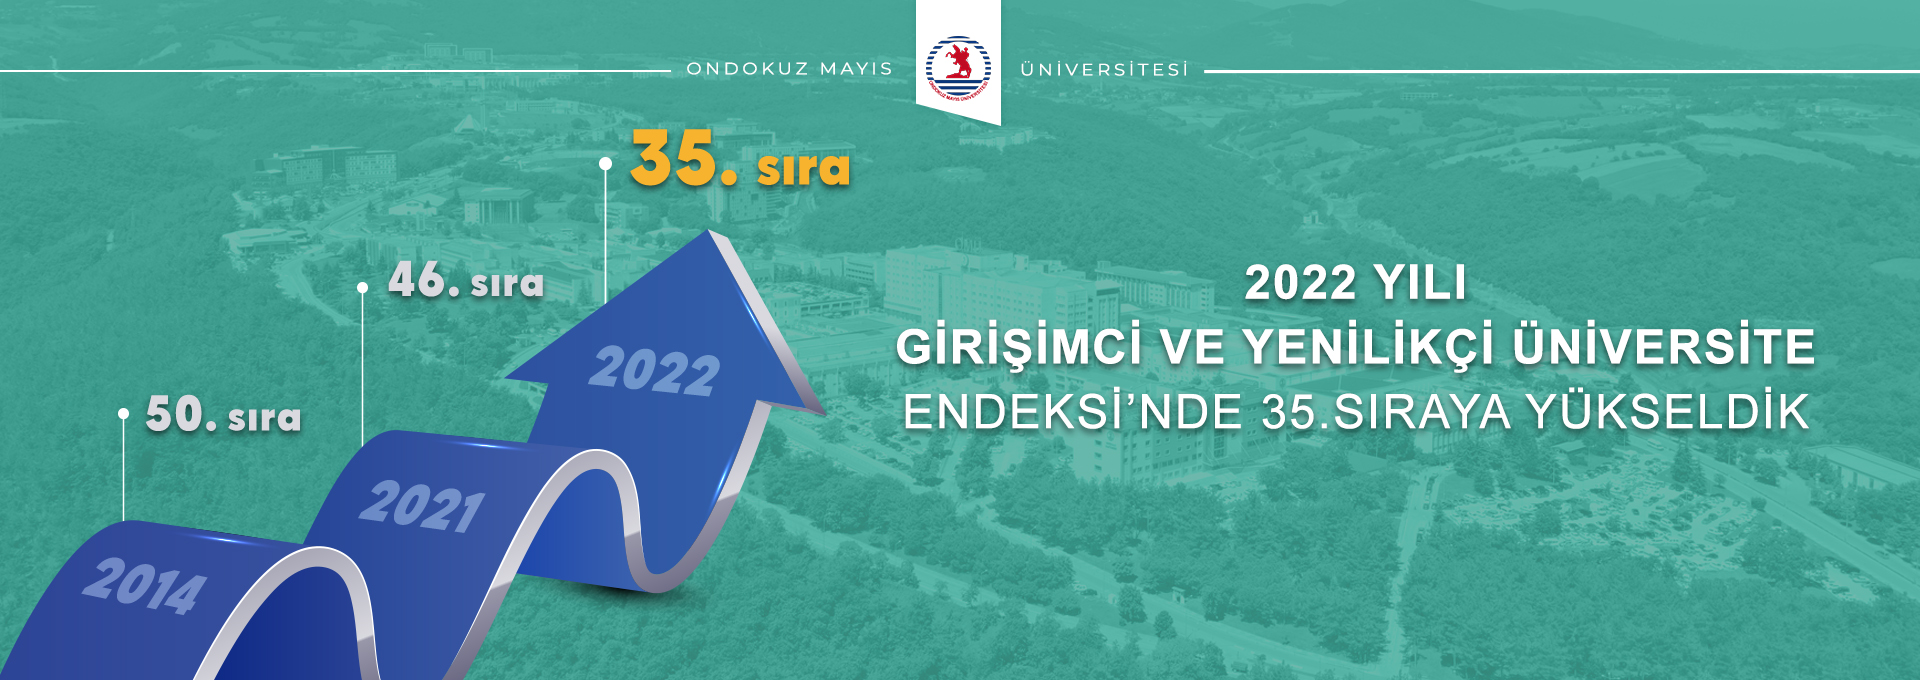 OMÜ; TÜBİTAK Girişimci ve Yenilikçi Üniversite Endeksi’nde 11 Basamak Birden Yükselerek Türkiye’nin İlk 35 Üniversitesi Arasında Yer Almayı Başardı